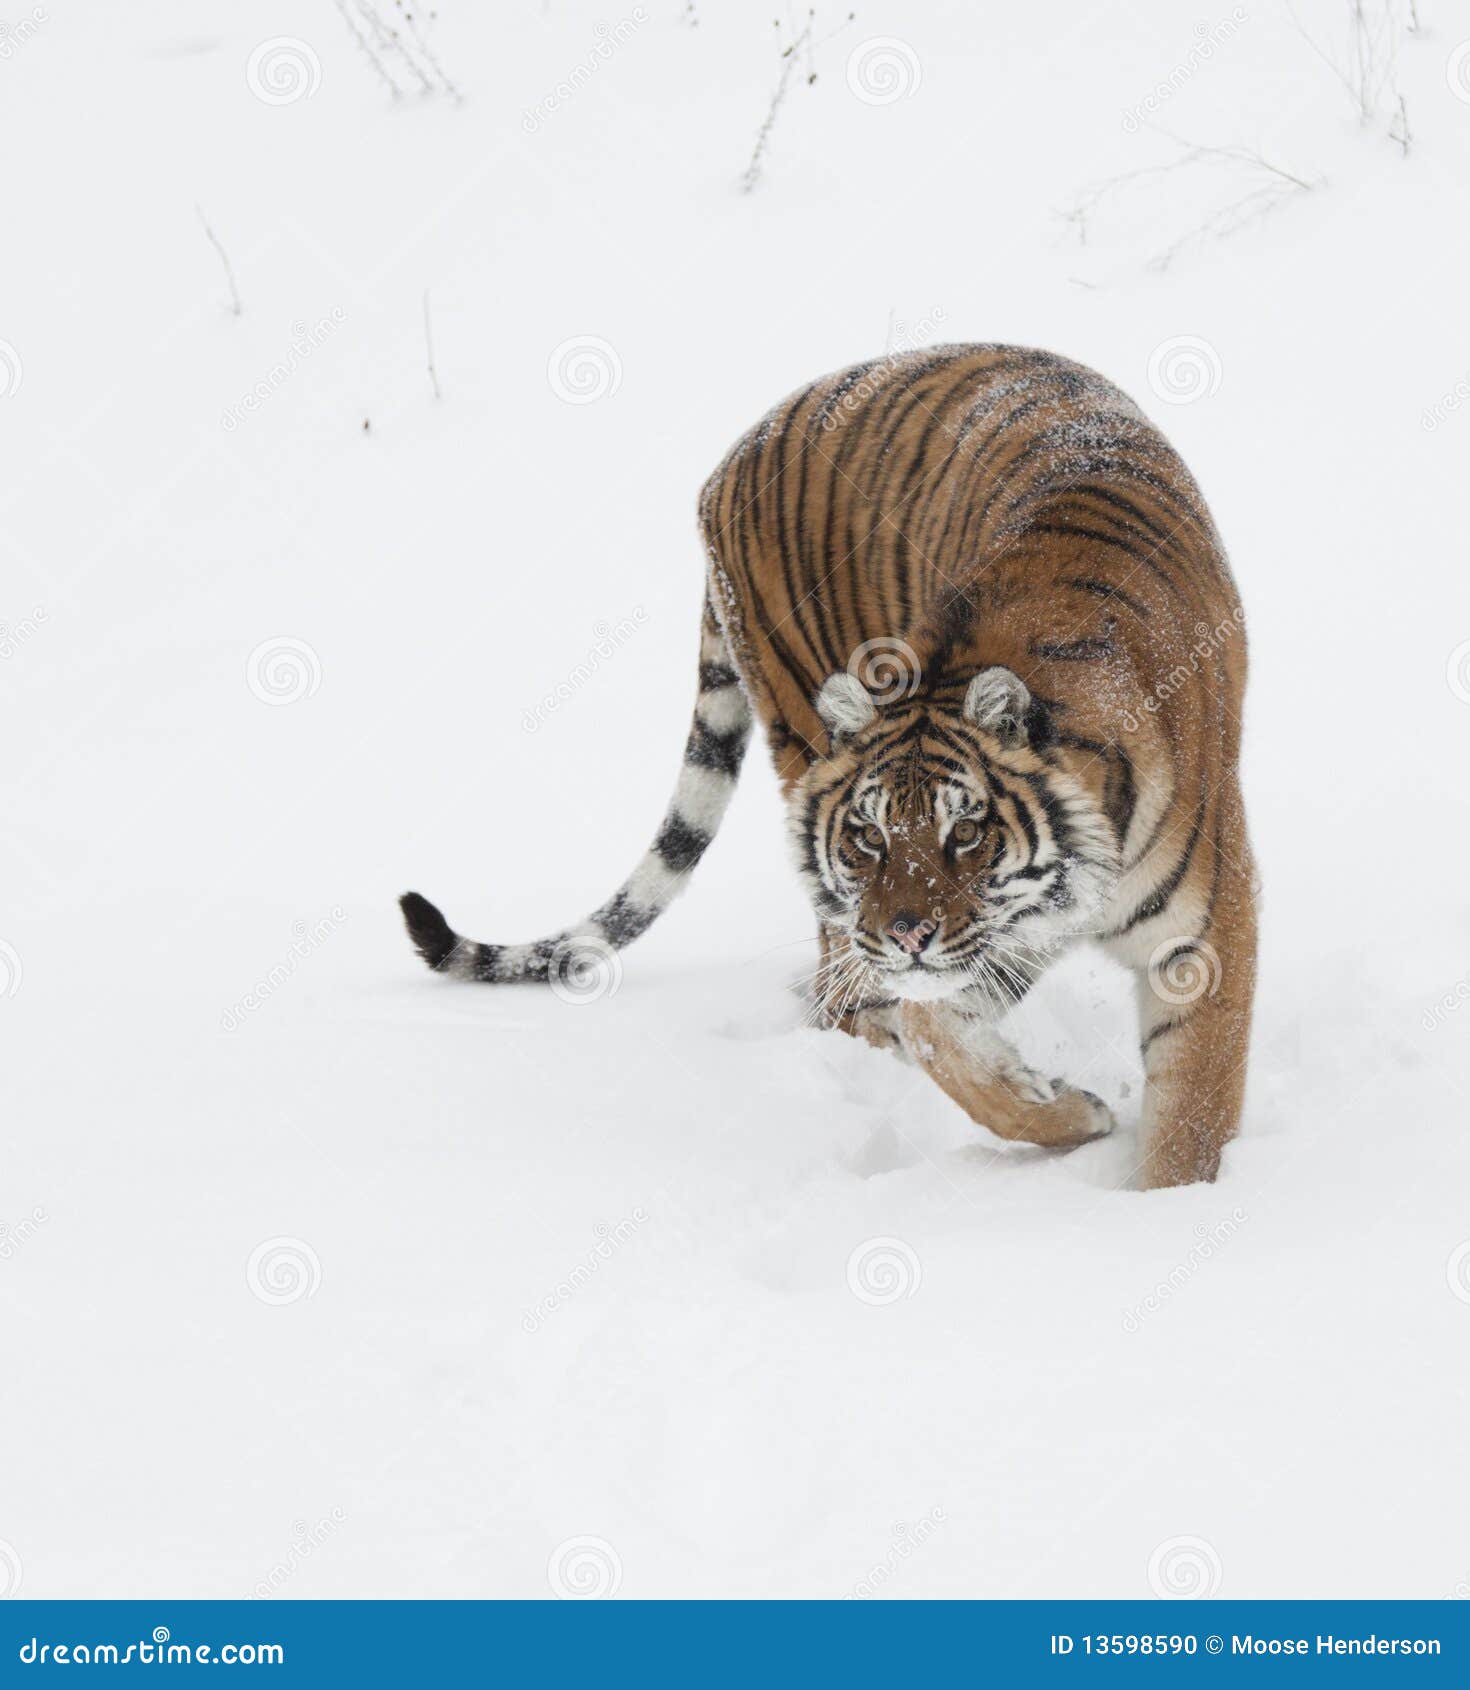 siberian amur tiger